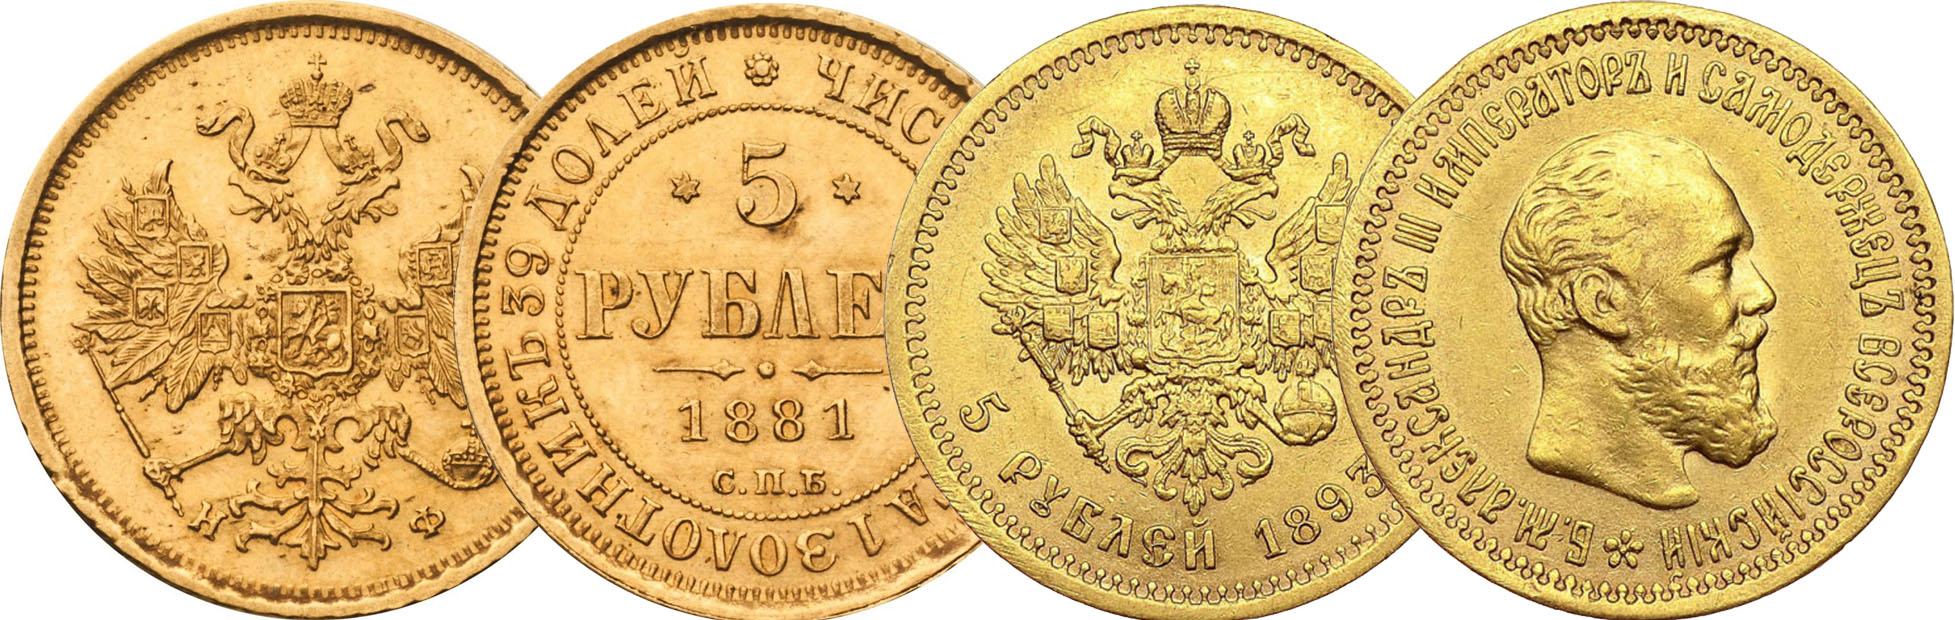 Рубль становится золотым. Золотой рубль Витте. Монеты 1894 года. Золотые монеты Витте.